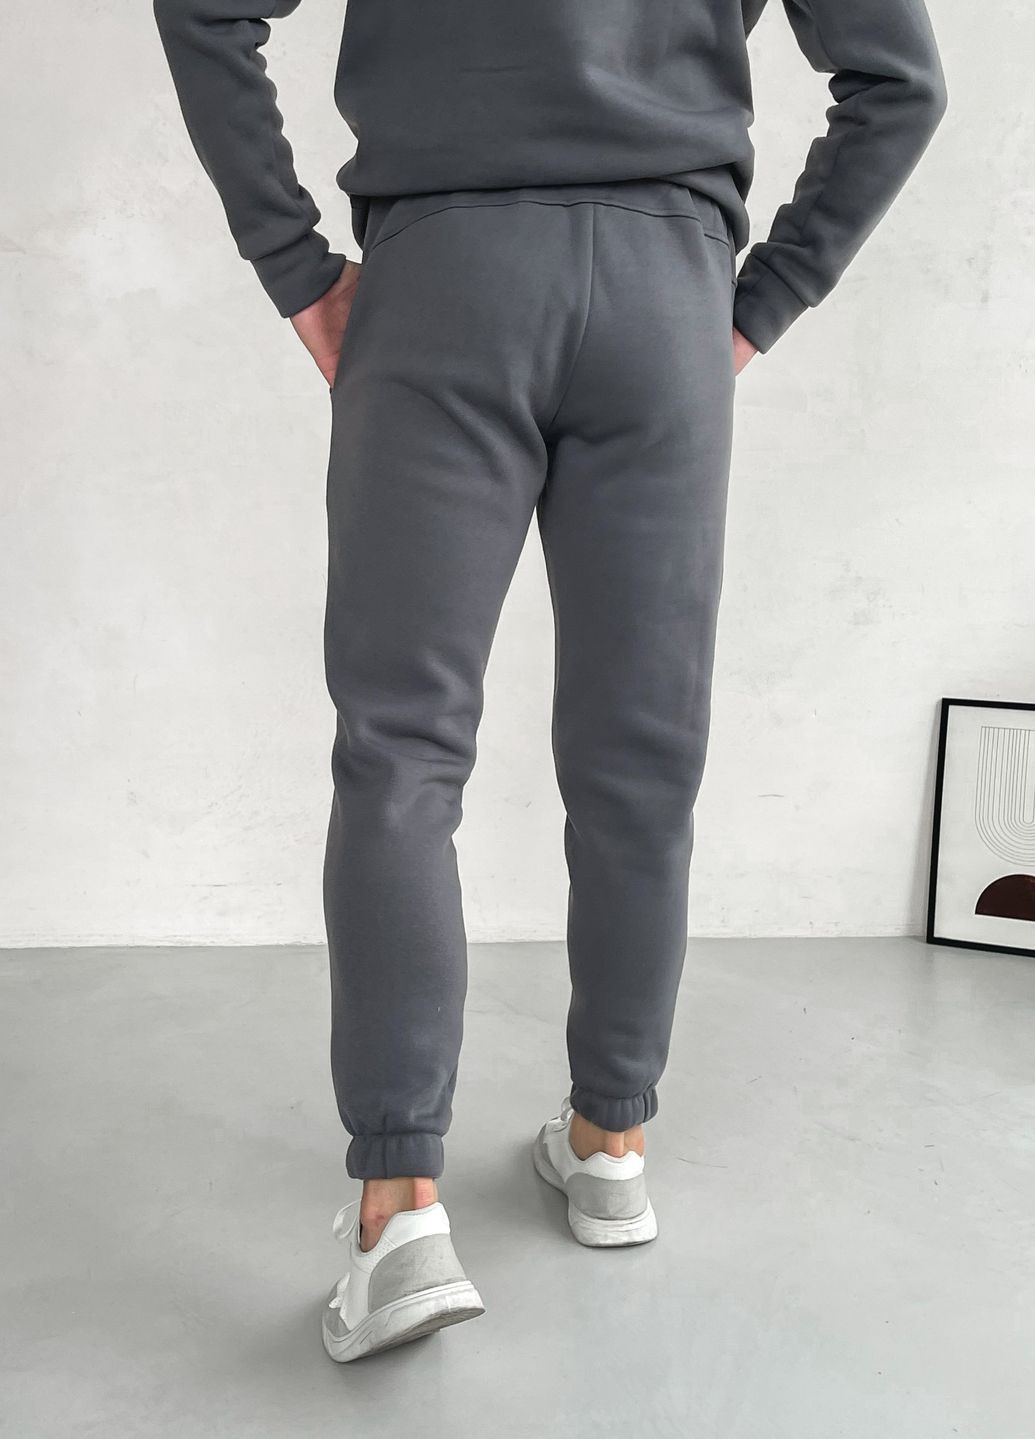 Купить Теплый мужской спортивный костюм на флисе темно-серого цвета Merlini Виско 100000210, размер 42-44 в интернет-магазине